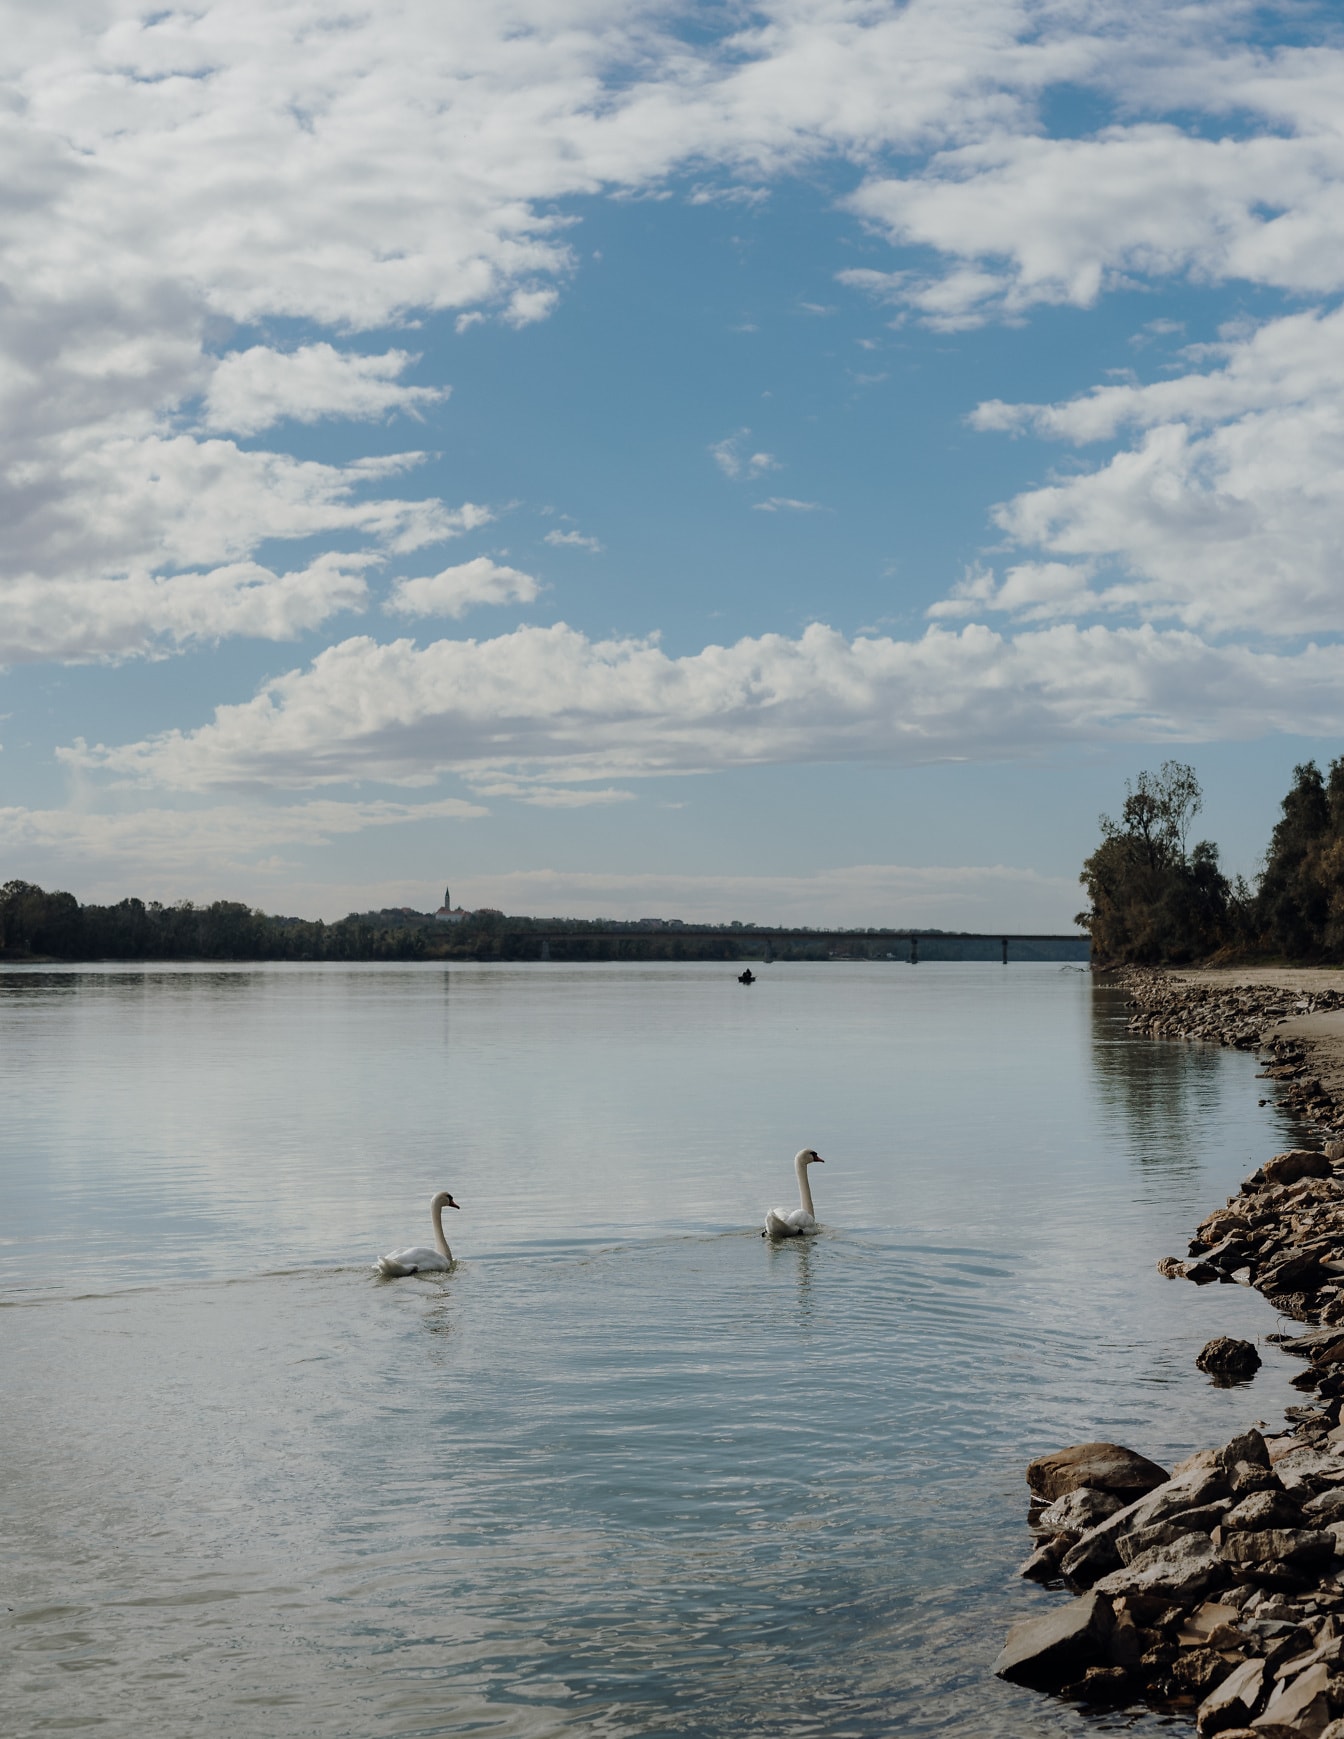 Labudove ptice plivaju na rijeci Dunav sa stjenovitom obalom rijeke